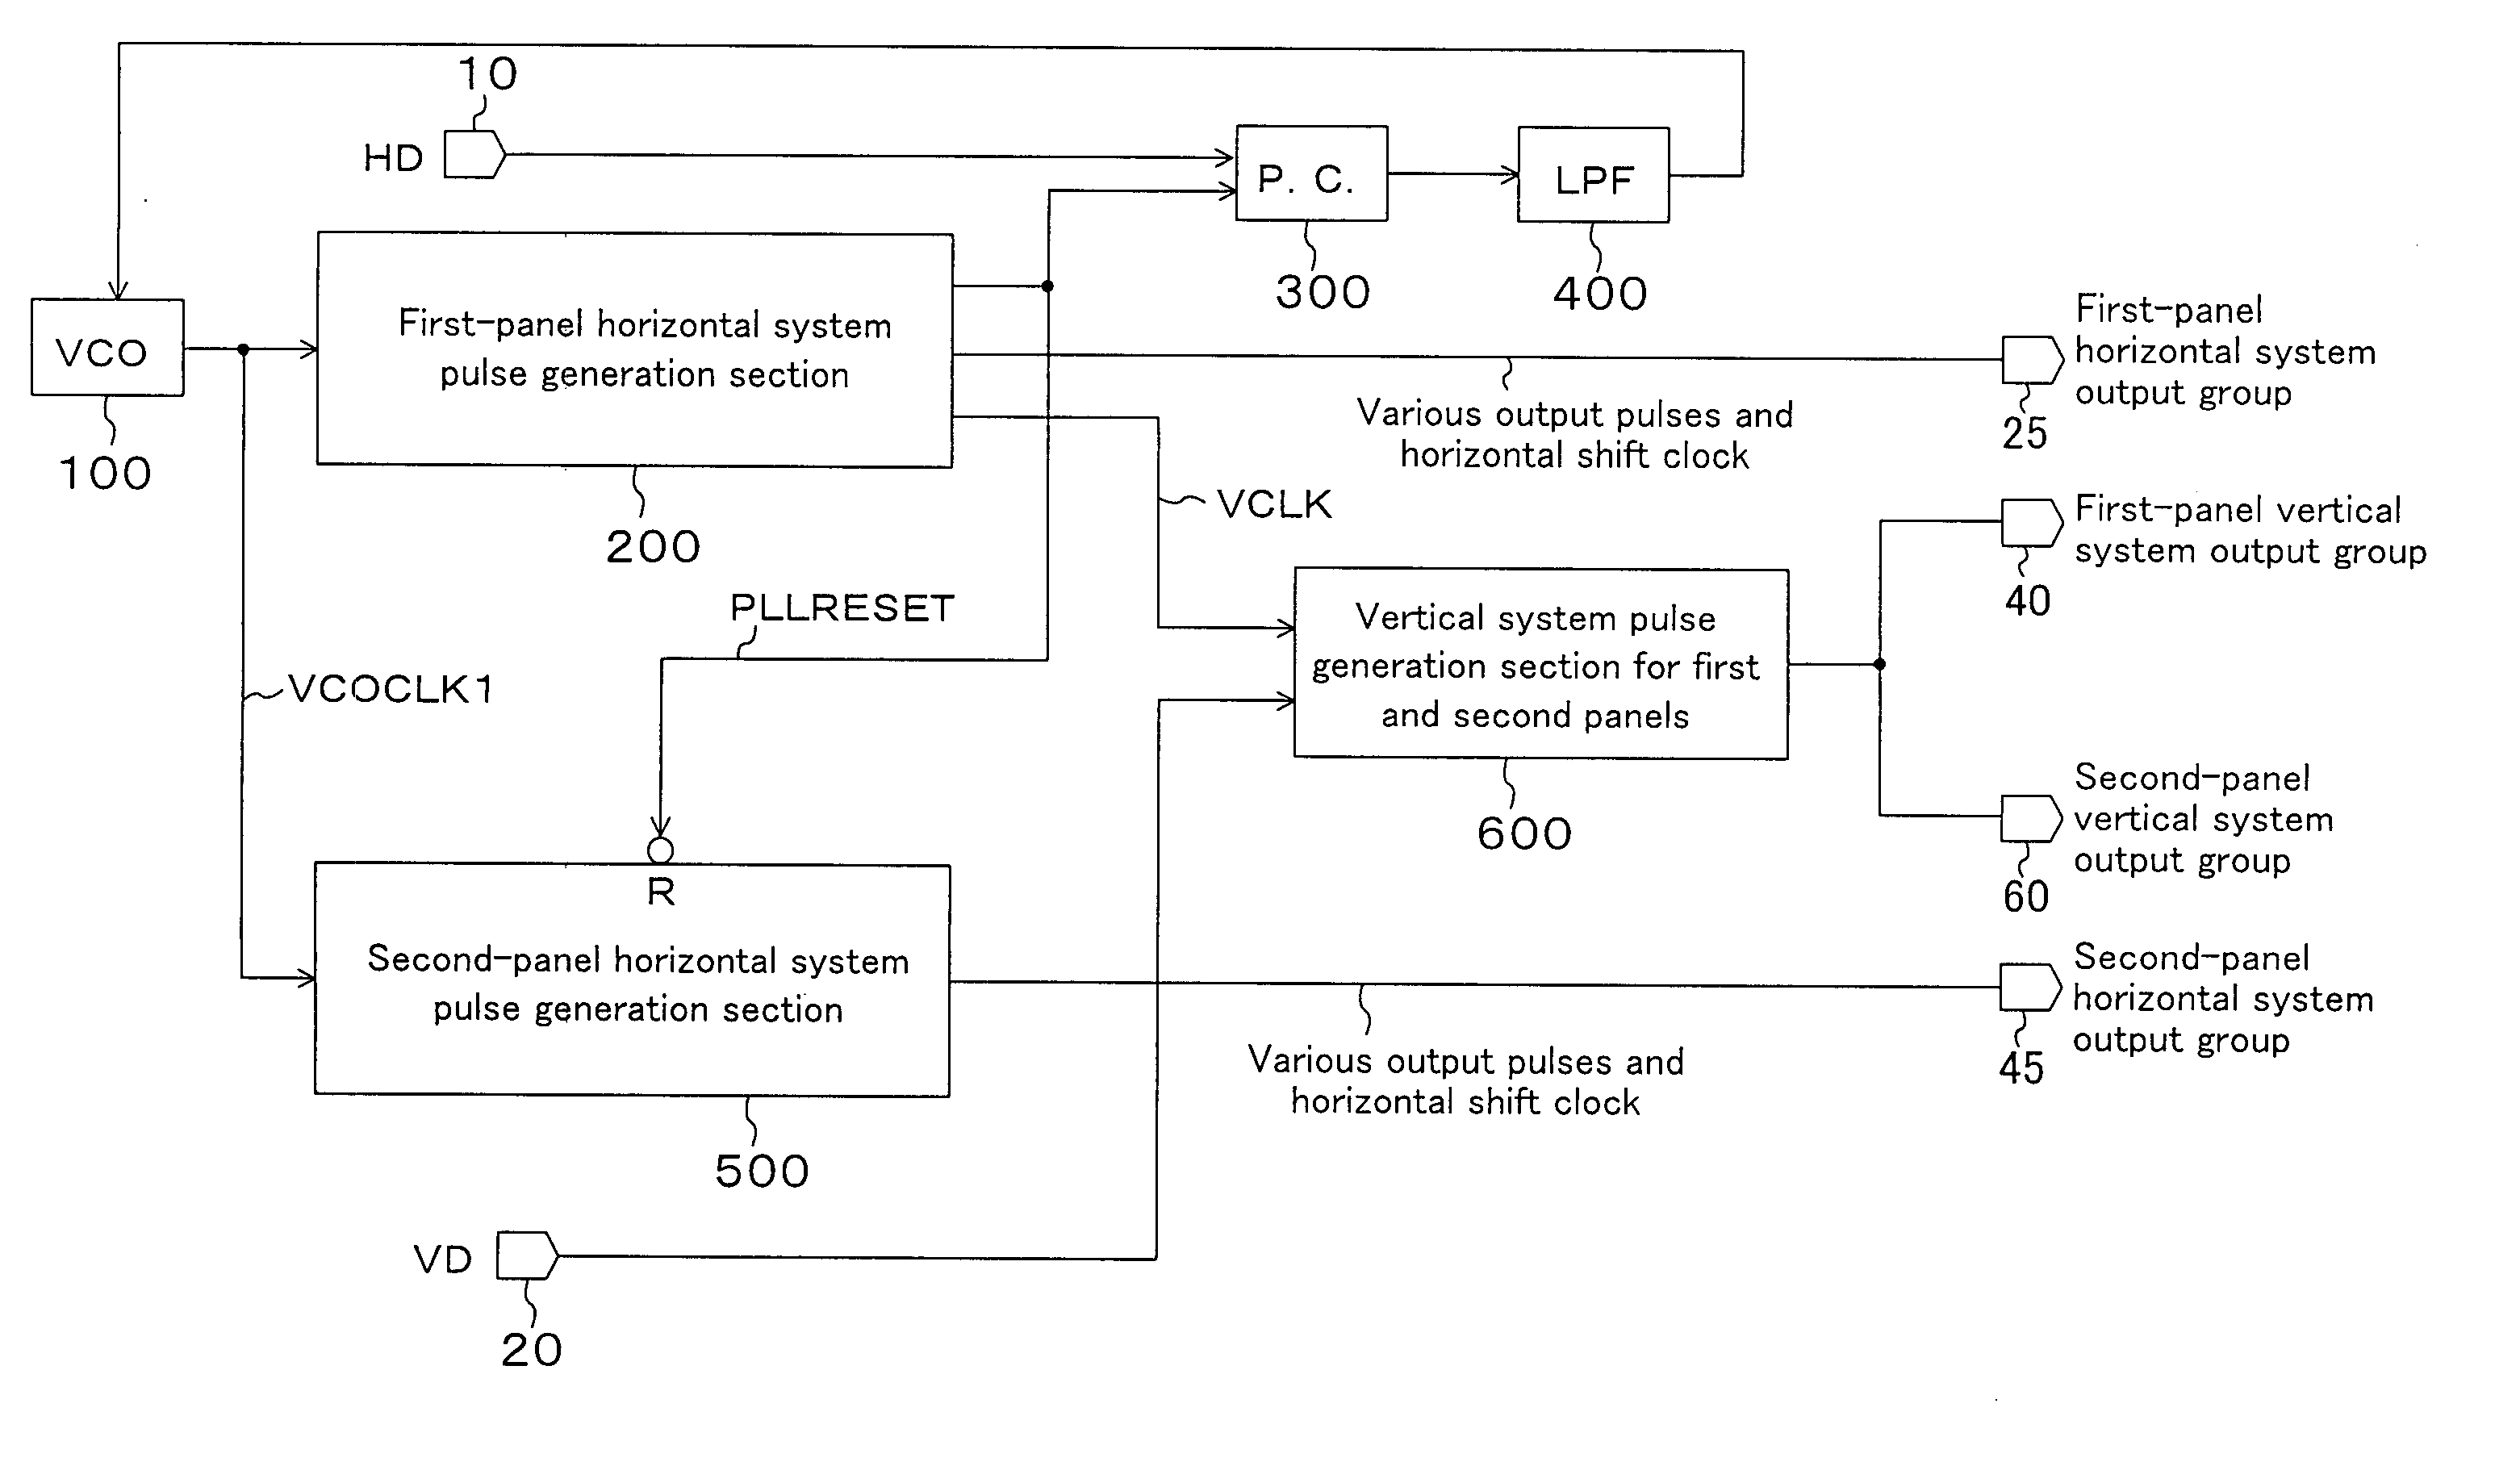 Display panel control circuit and display panel control method